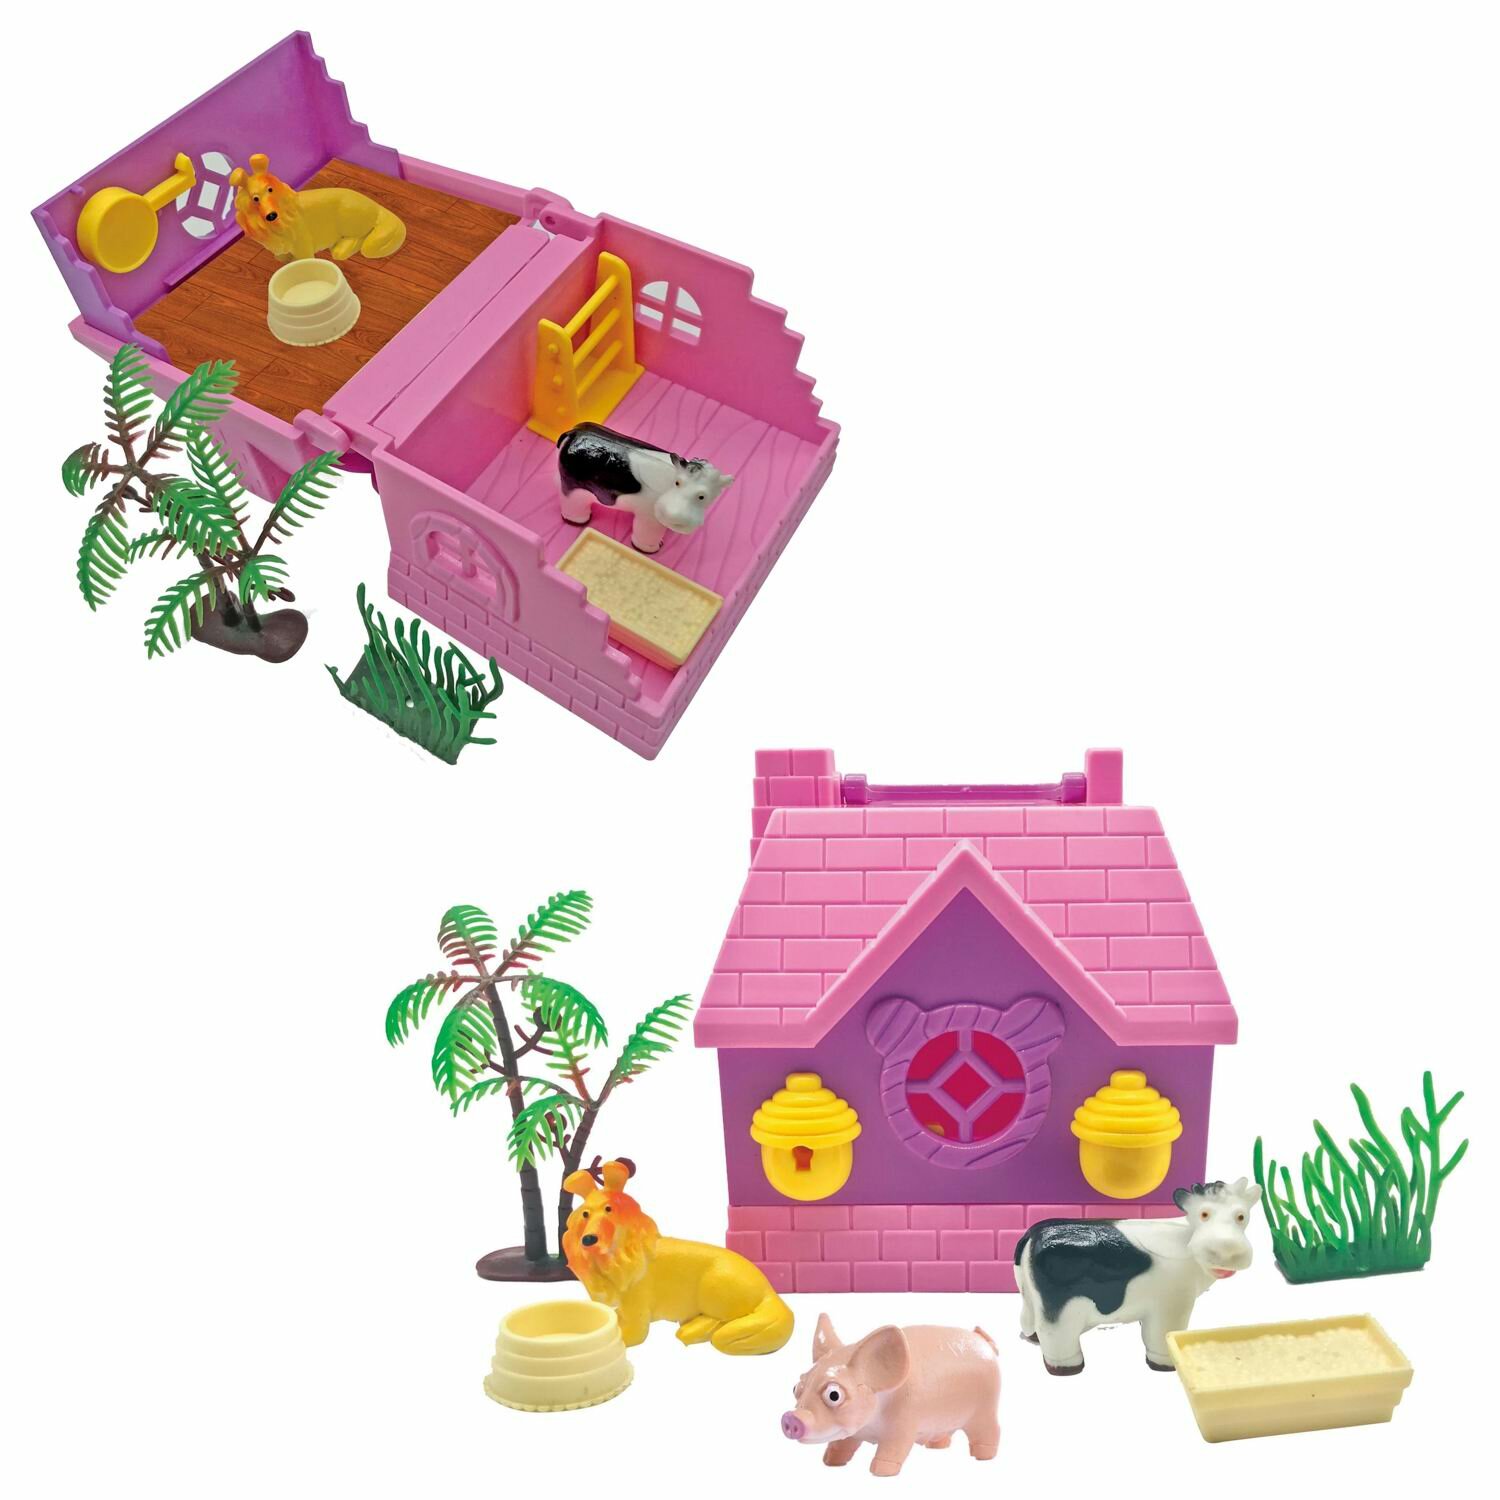 Домик раскладной Junfa с фигуркой животного и игровыми предметами, в дисплейной коробке по 6 штук (WK-27157)